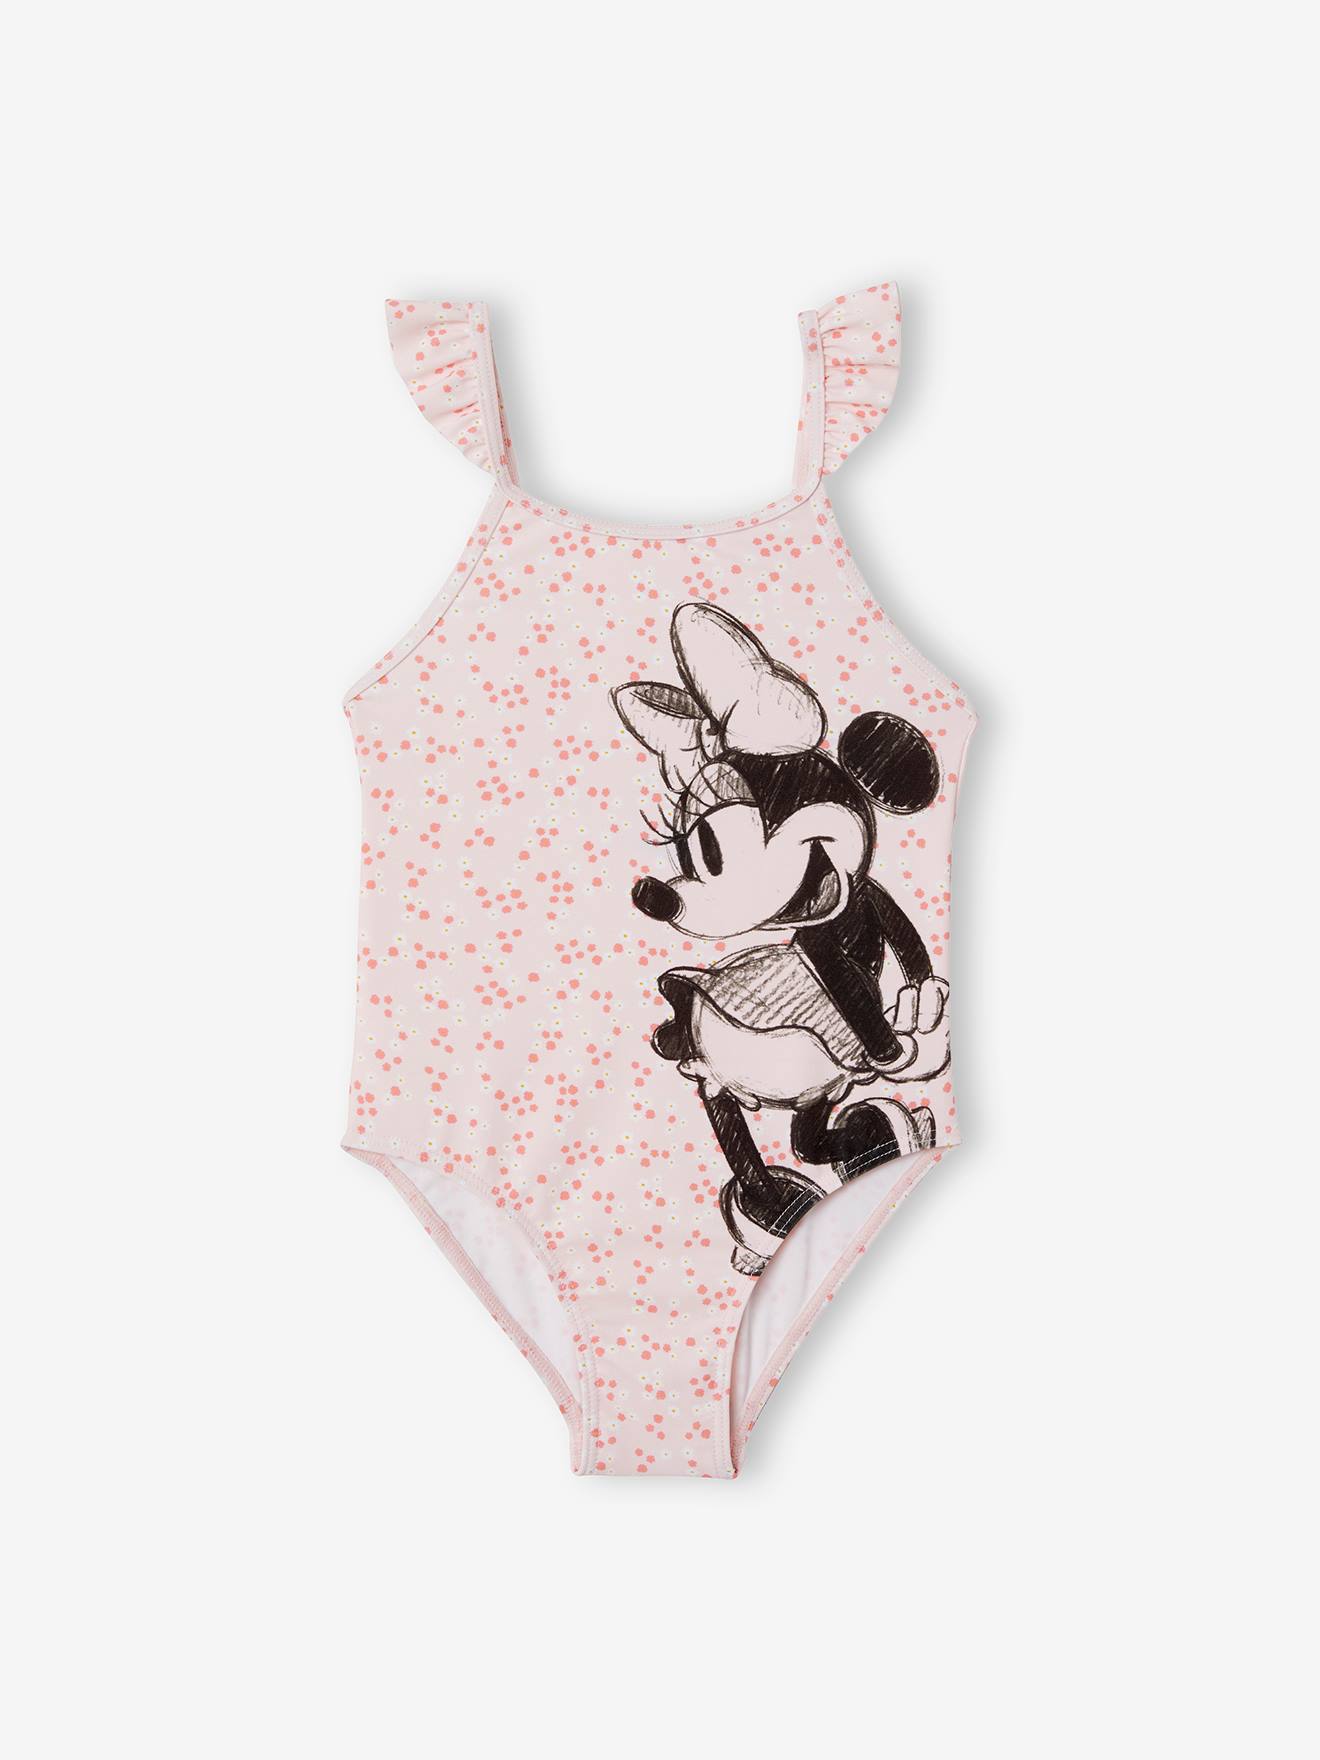 Visiter la boutique DisneyDisney Minnie Mouse Maillot de bain pour fille 